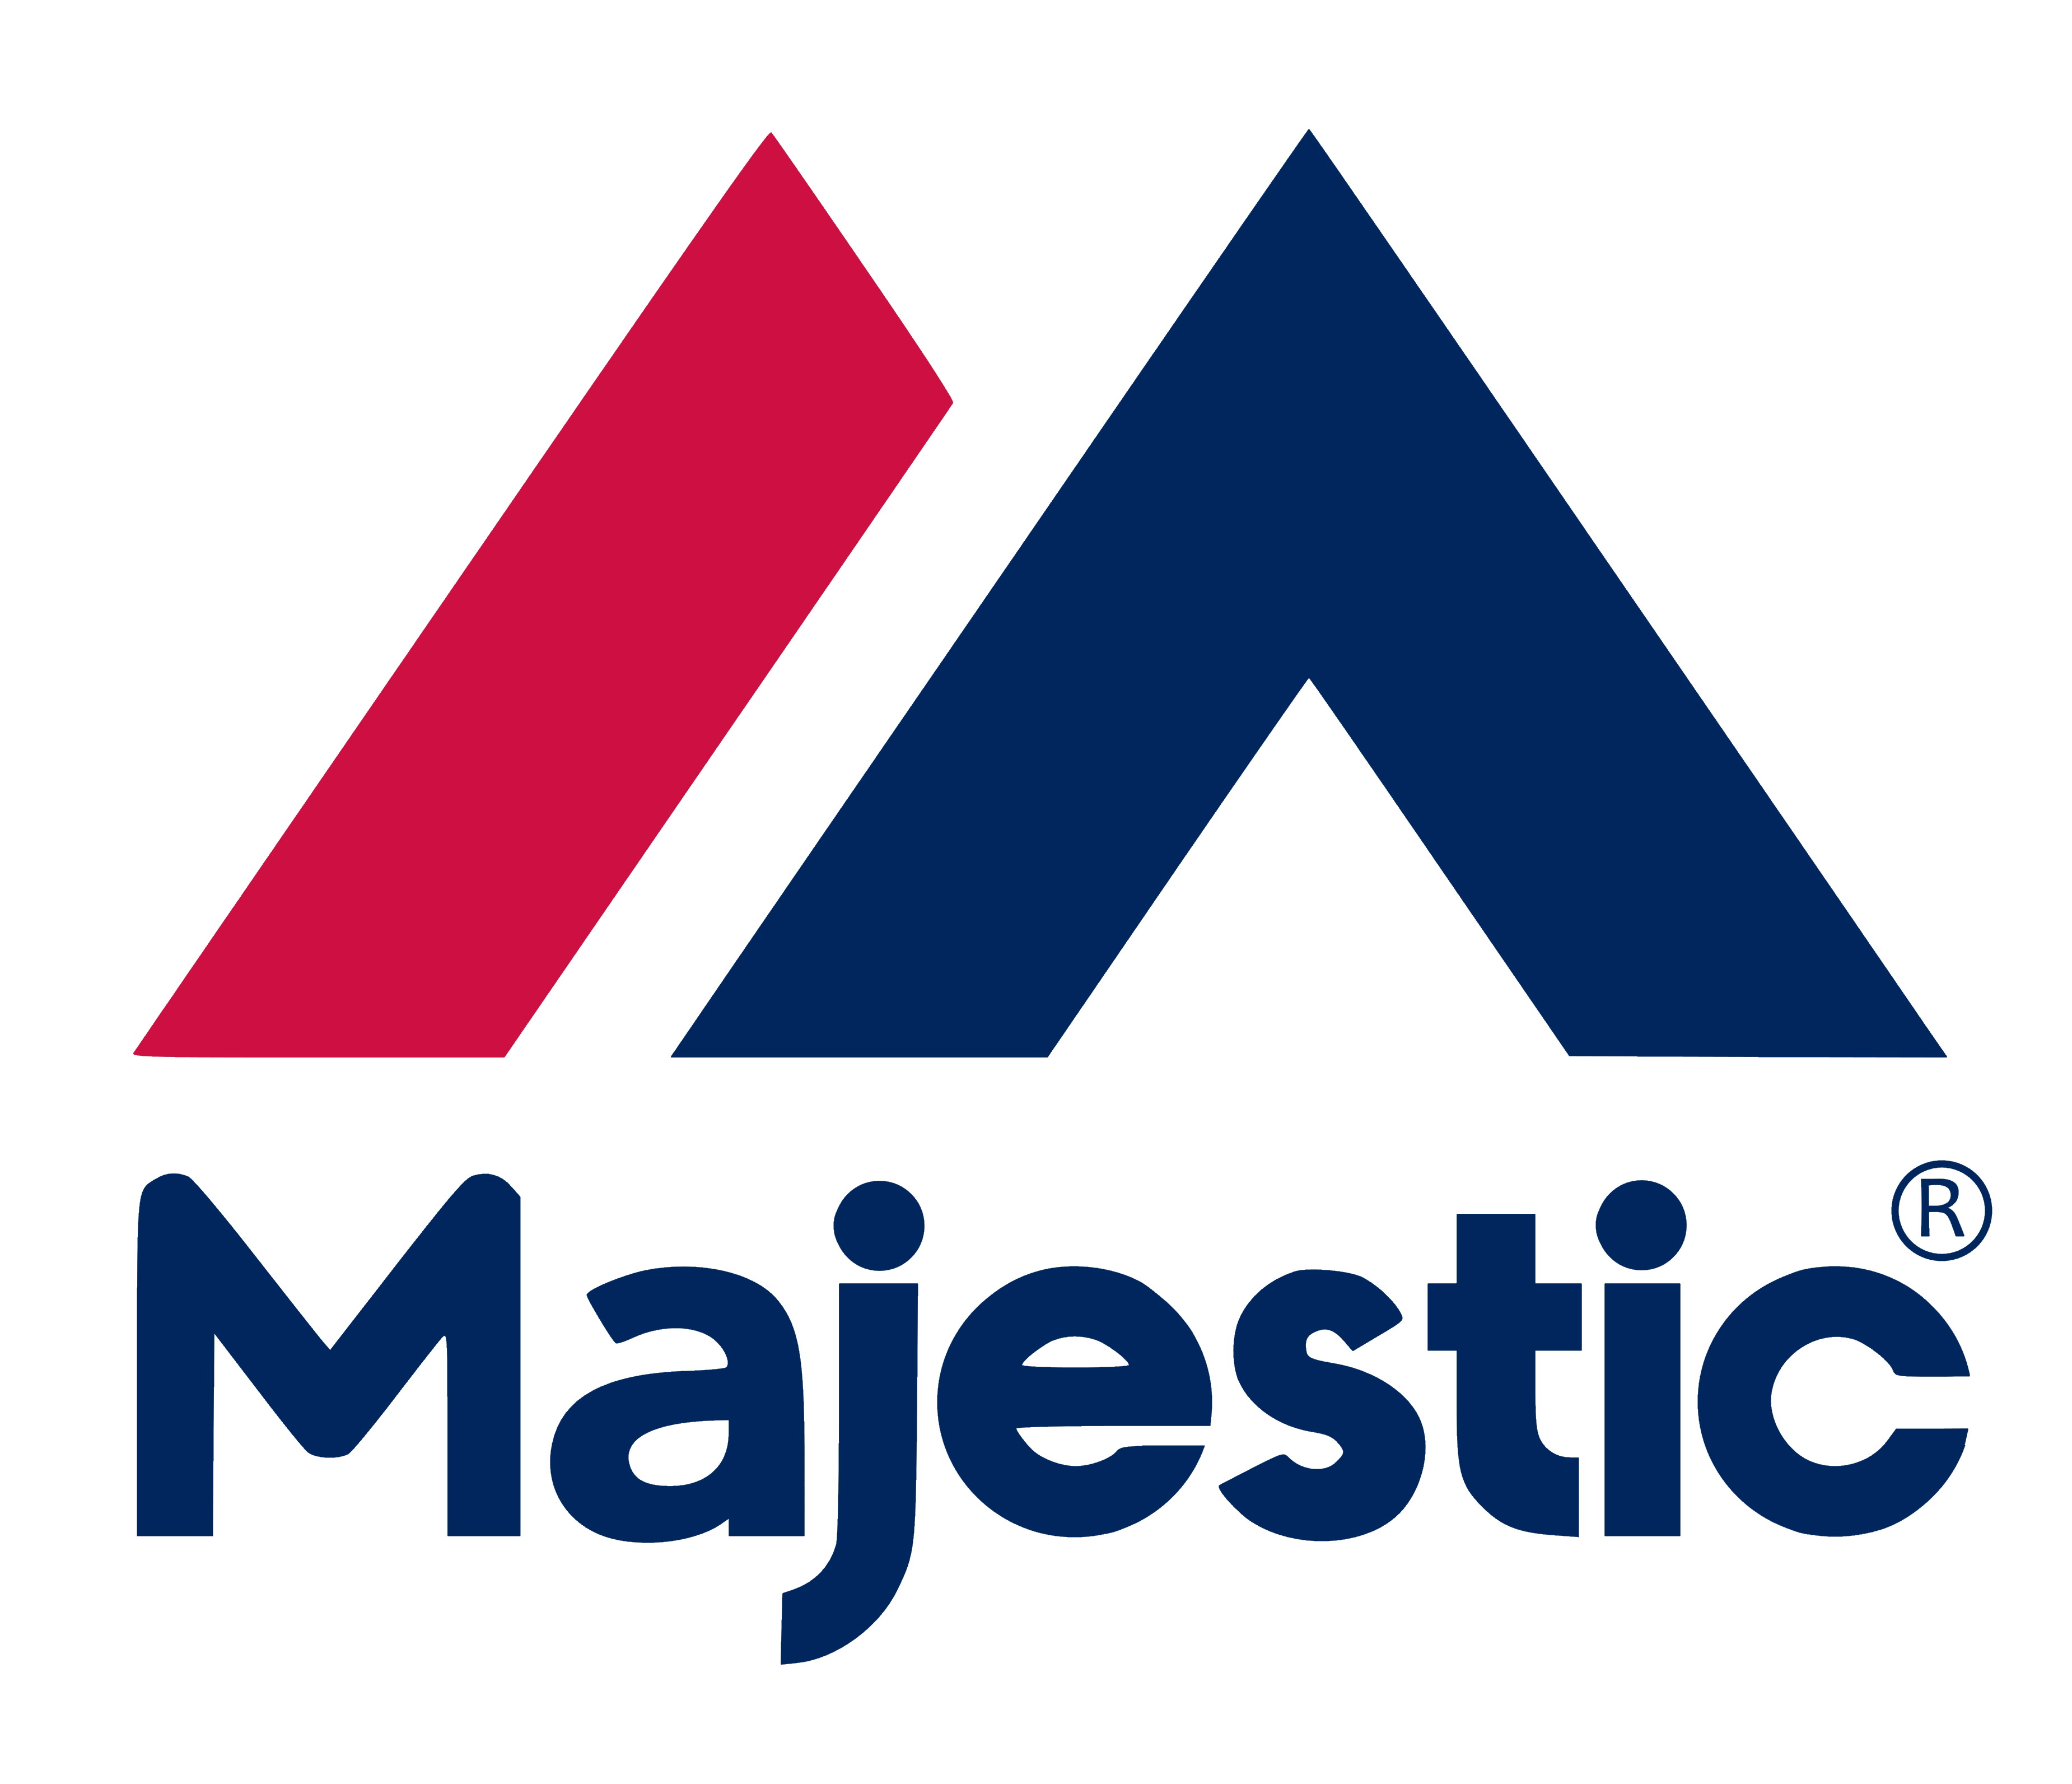 Majestic logo, logotype